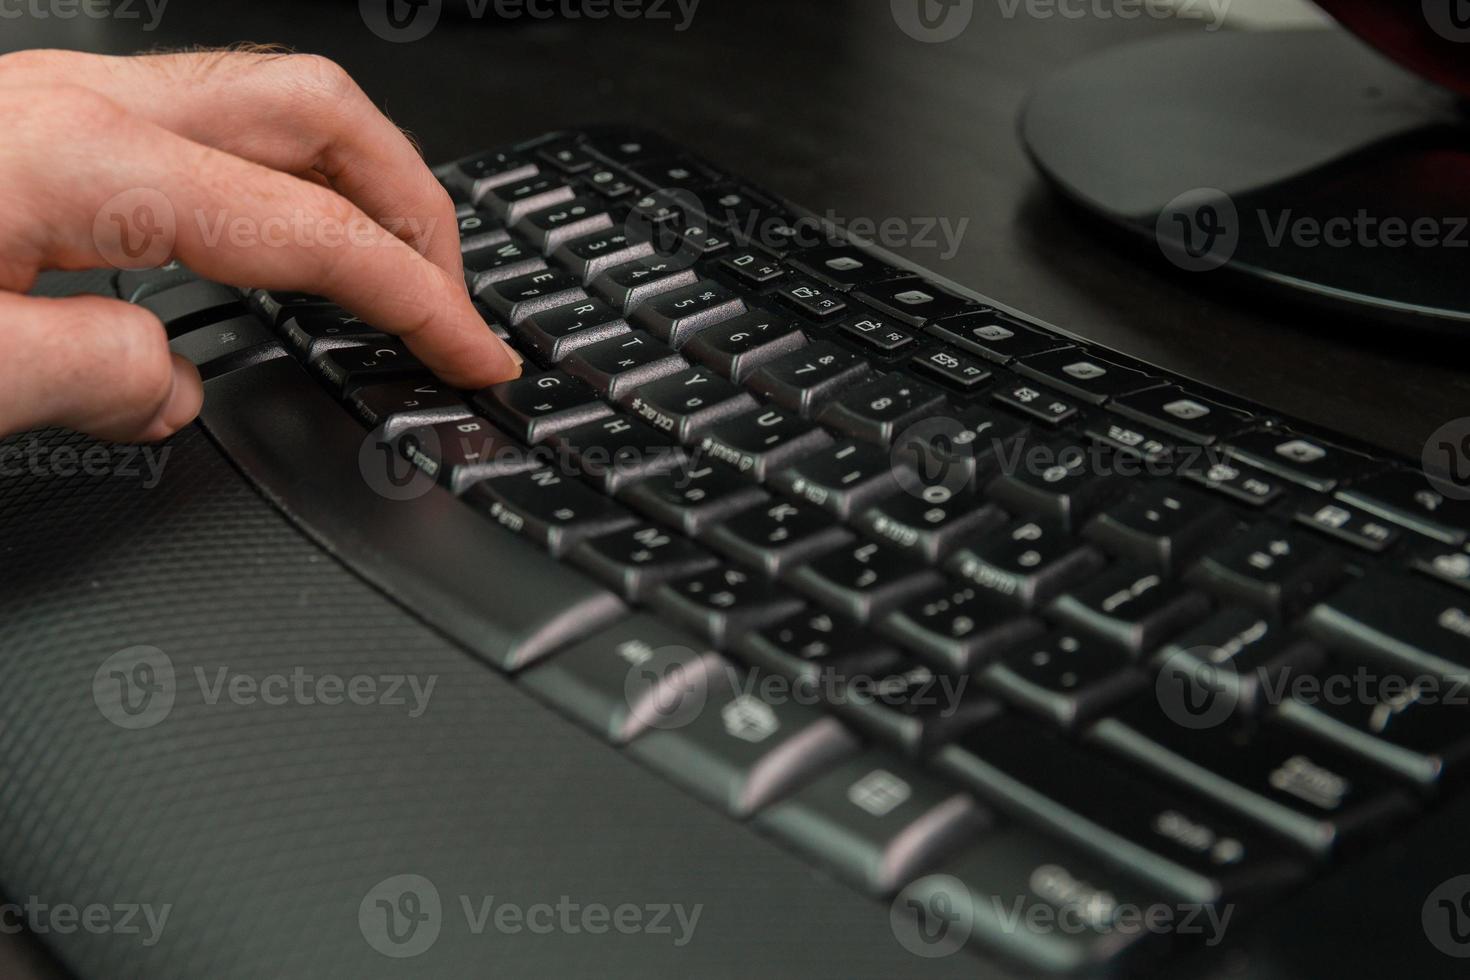 man typt op een toetsenbord met letters in het hebreeuws en engels foto